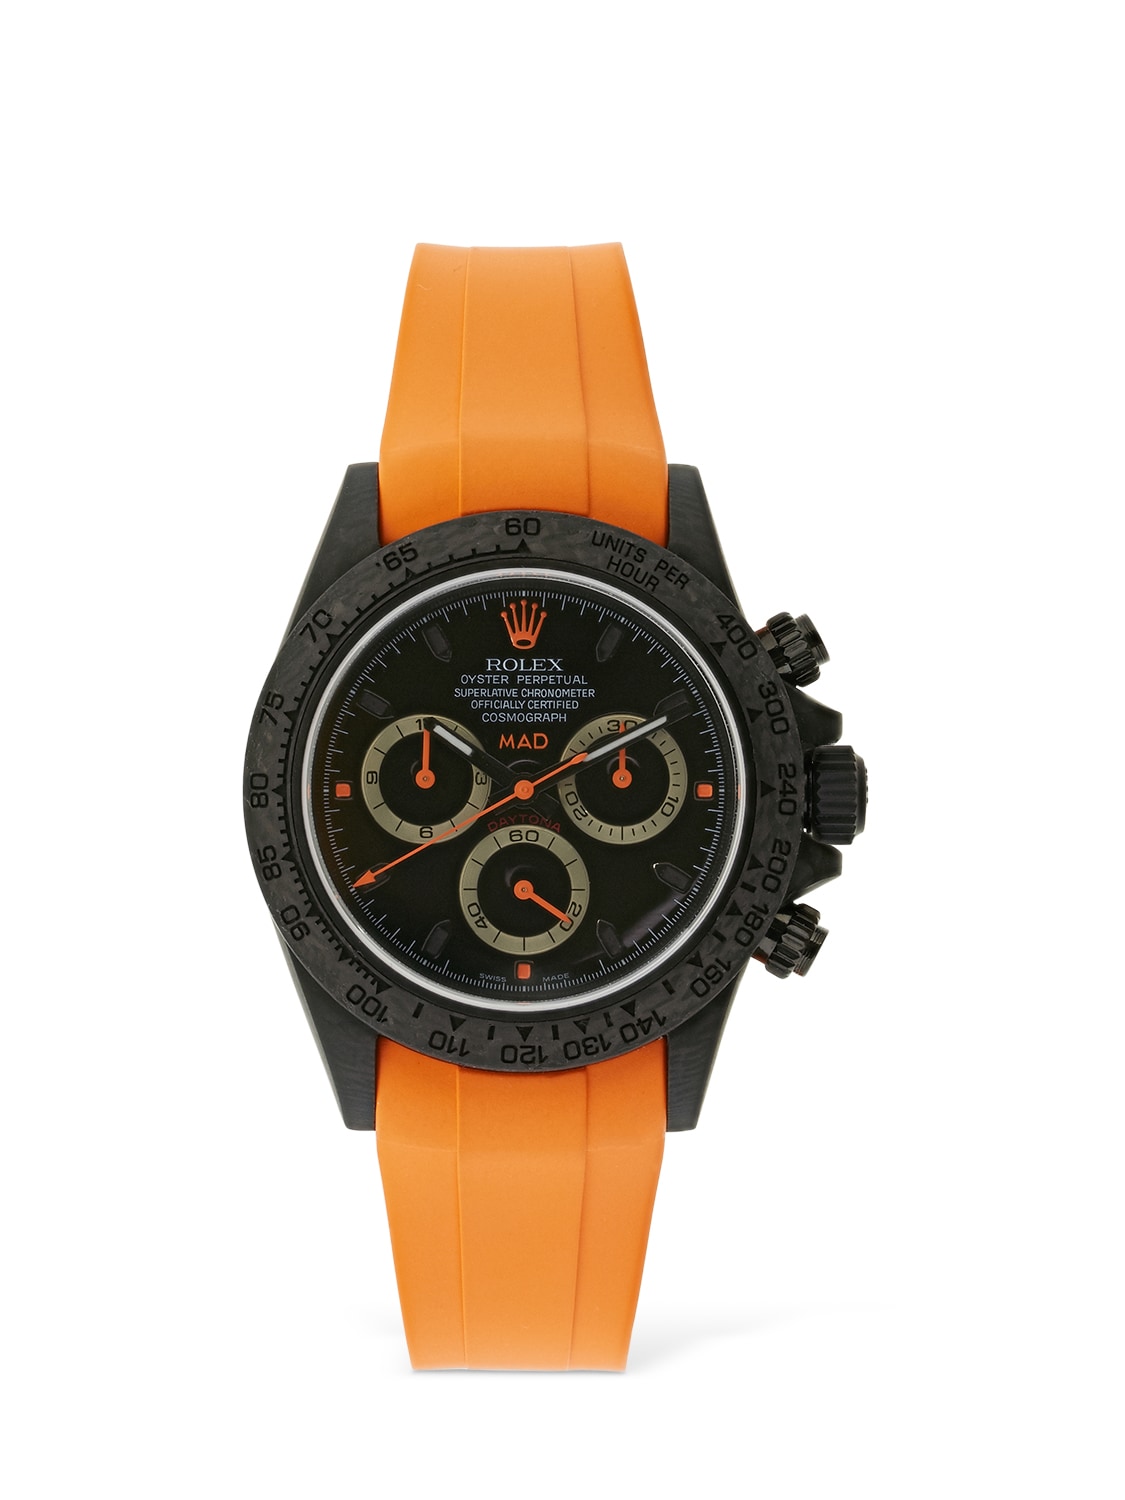 Mad Paris 40mm Rolex Daytona Carbon Watch In Orange,black